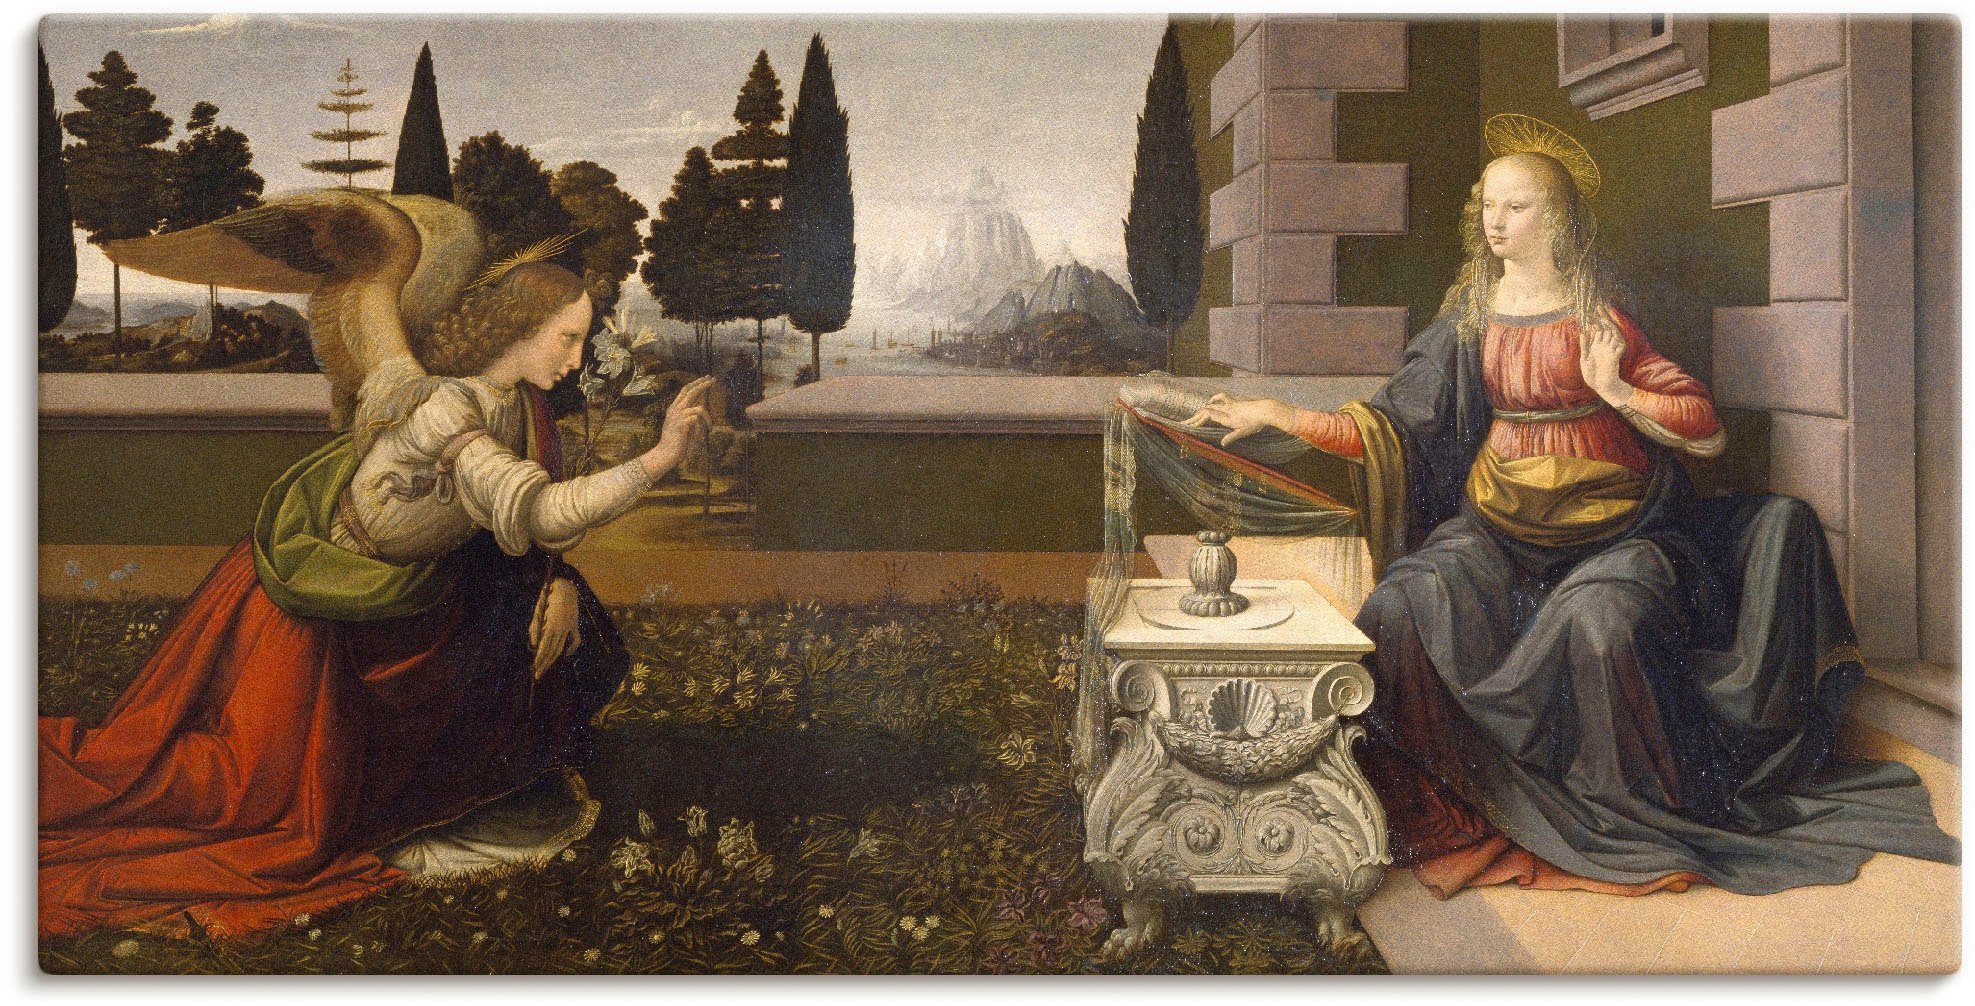 Artland Artprint De aankondiging aan Maria. Ca. 1475-1480. in vele afmetingen & productsoorten -artprint op linnen, poster, muursticker / wandfolie ook geschikt voor de badkamer (1